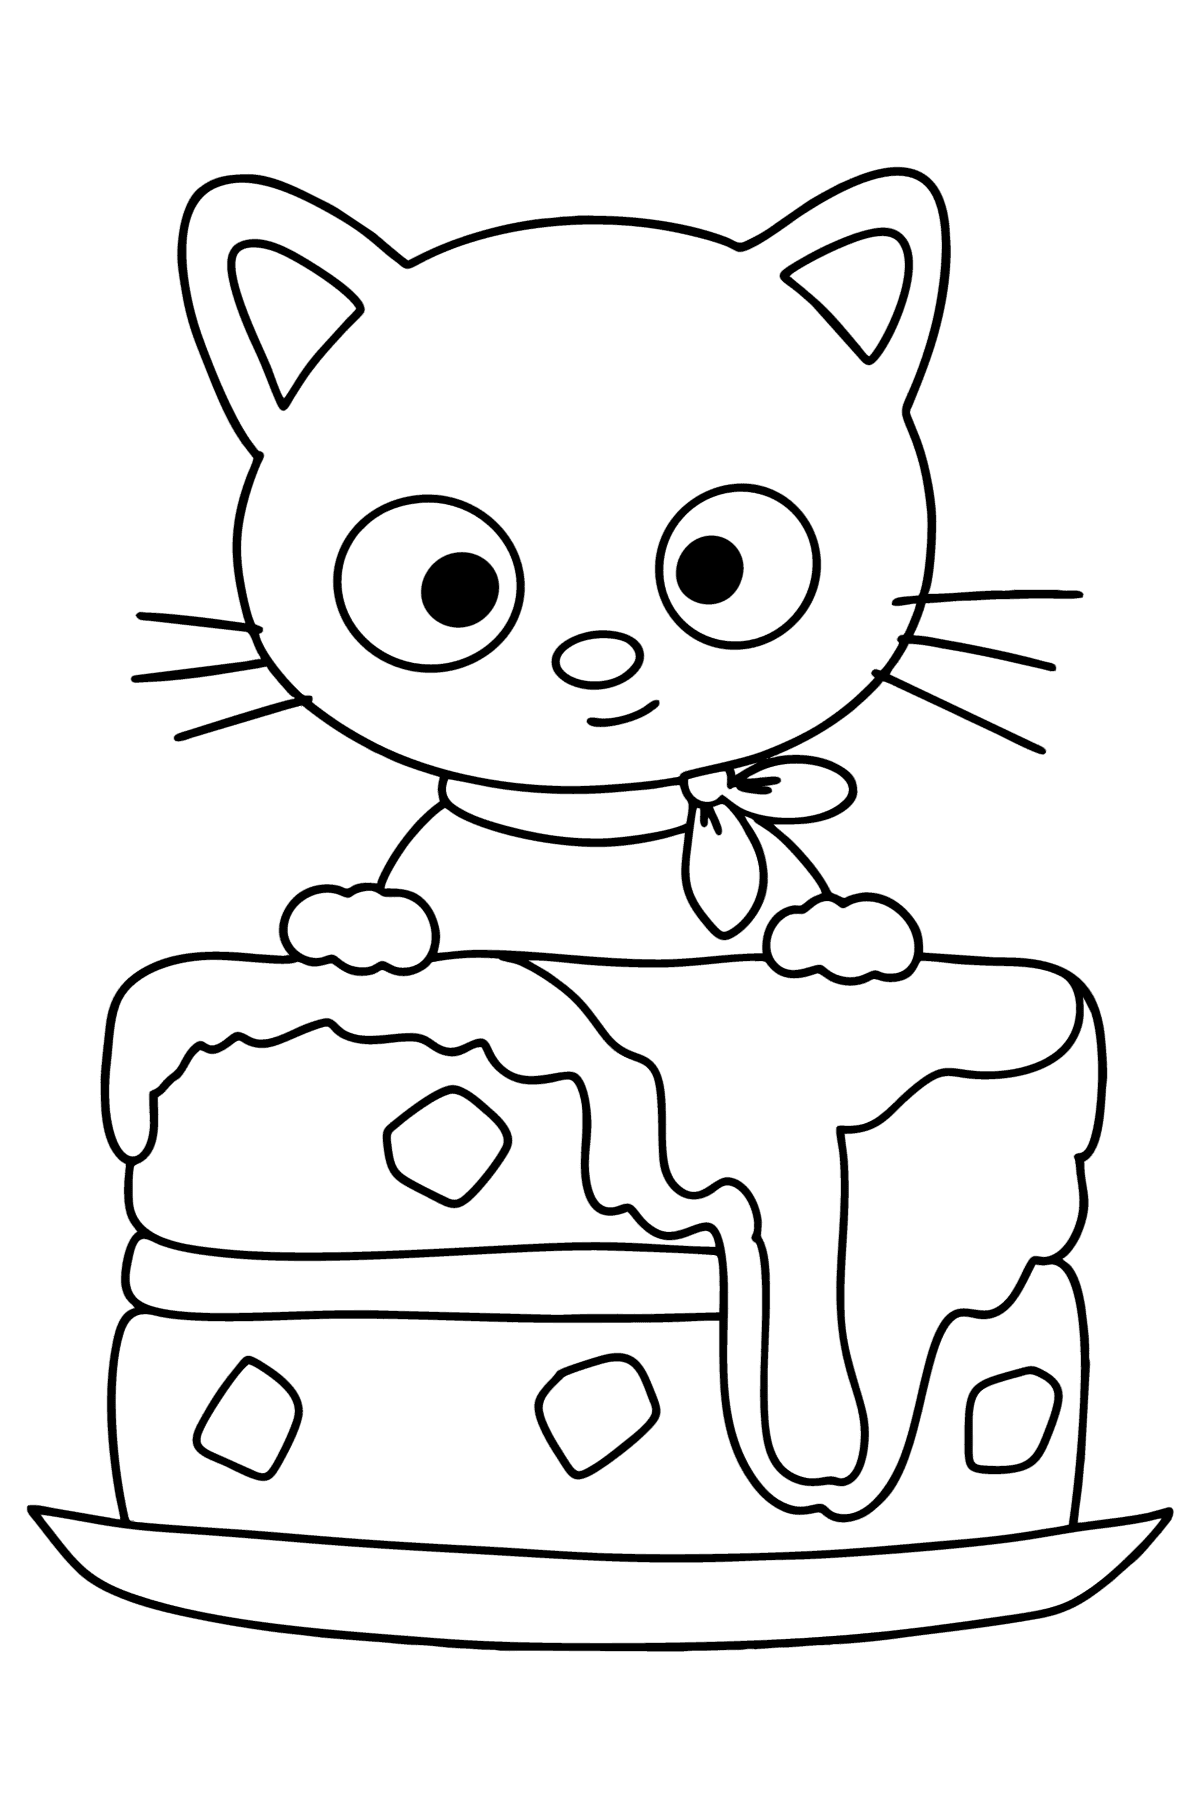 Раскраска Котик Chococat - Картинки для Детей